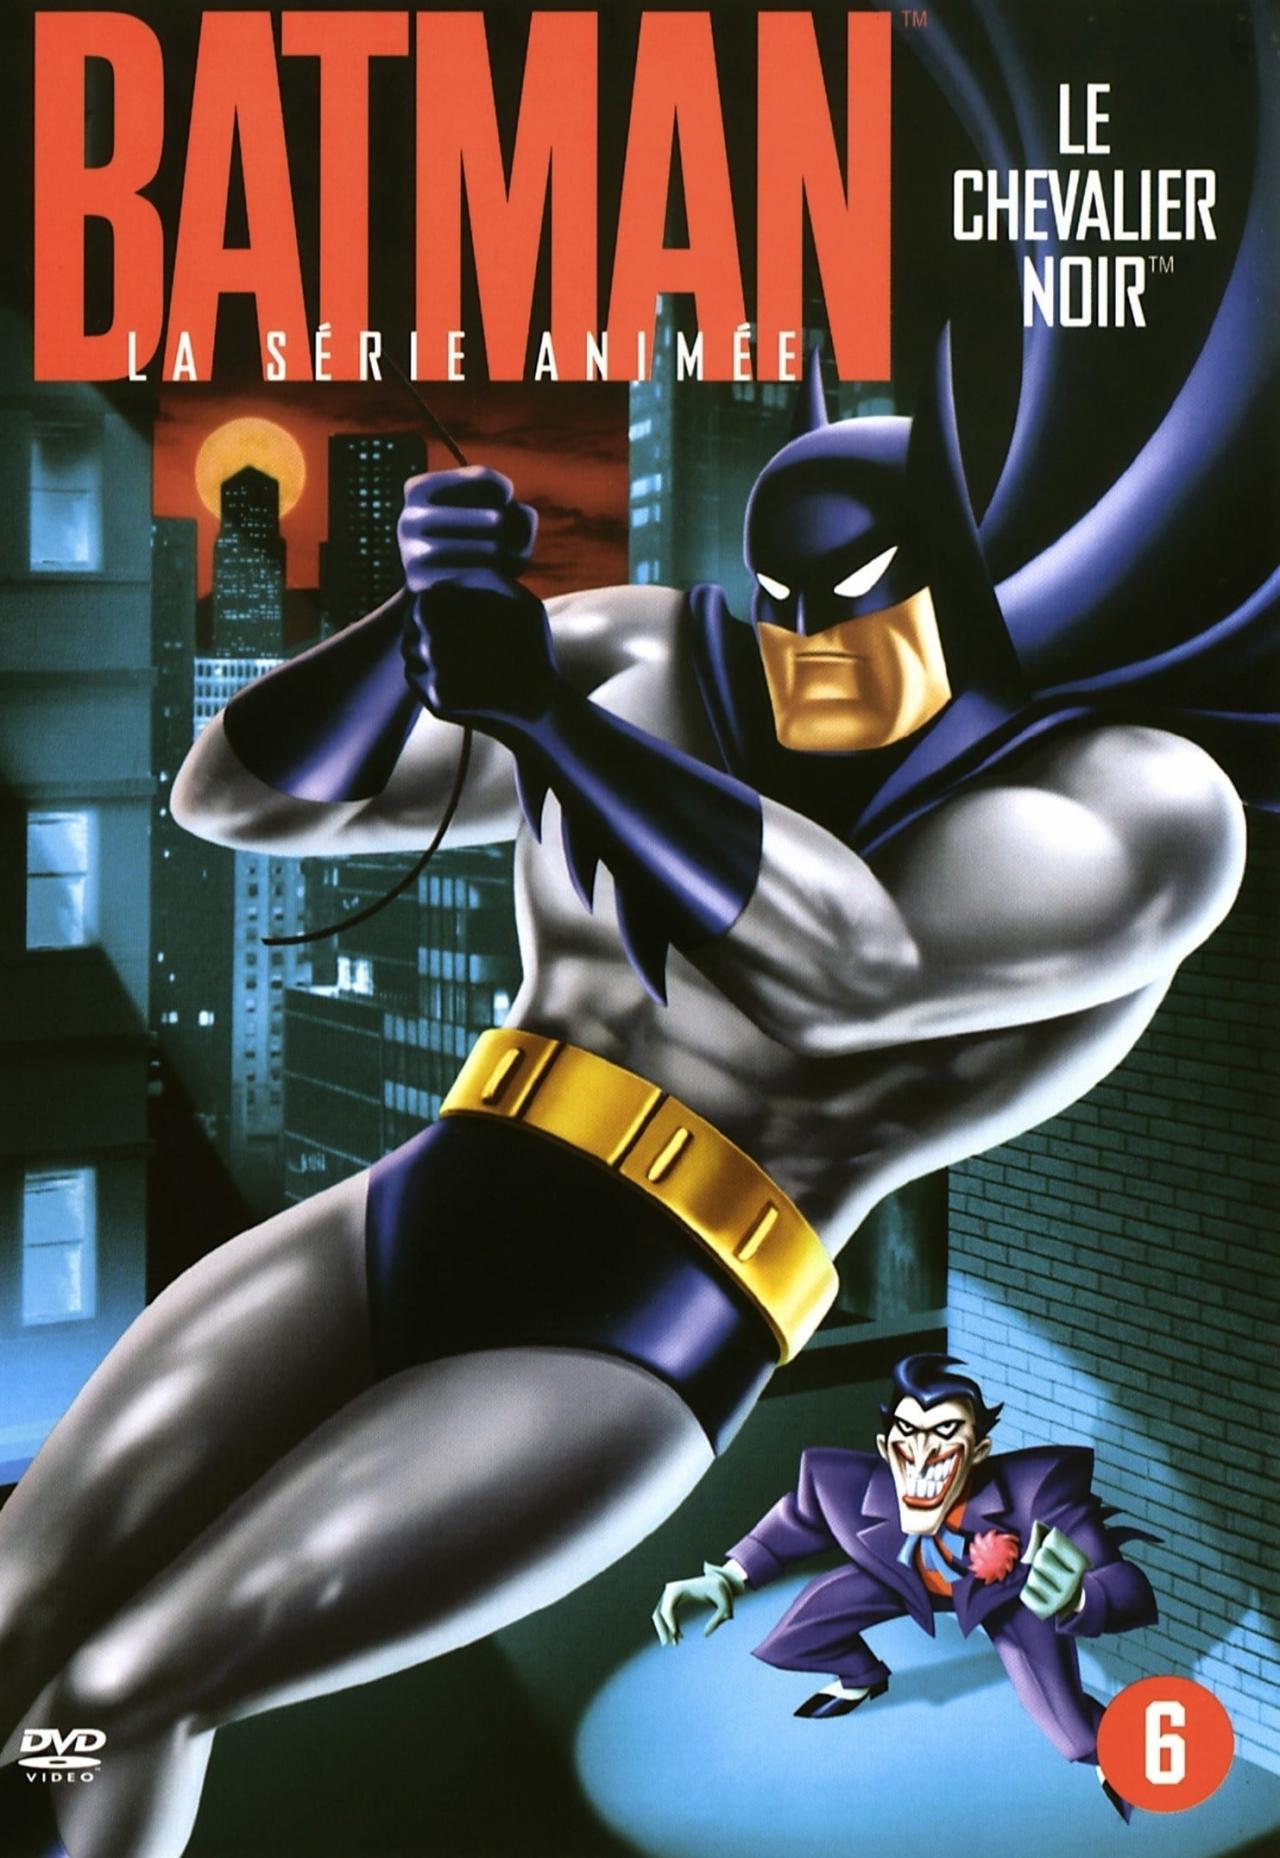 Affiche de la série Batman : La Série animée poster